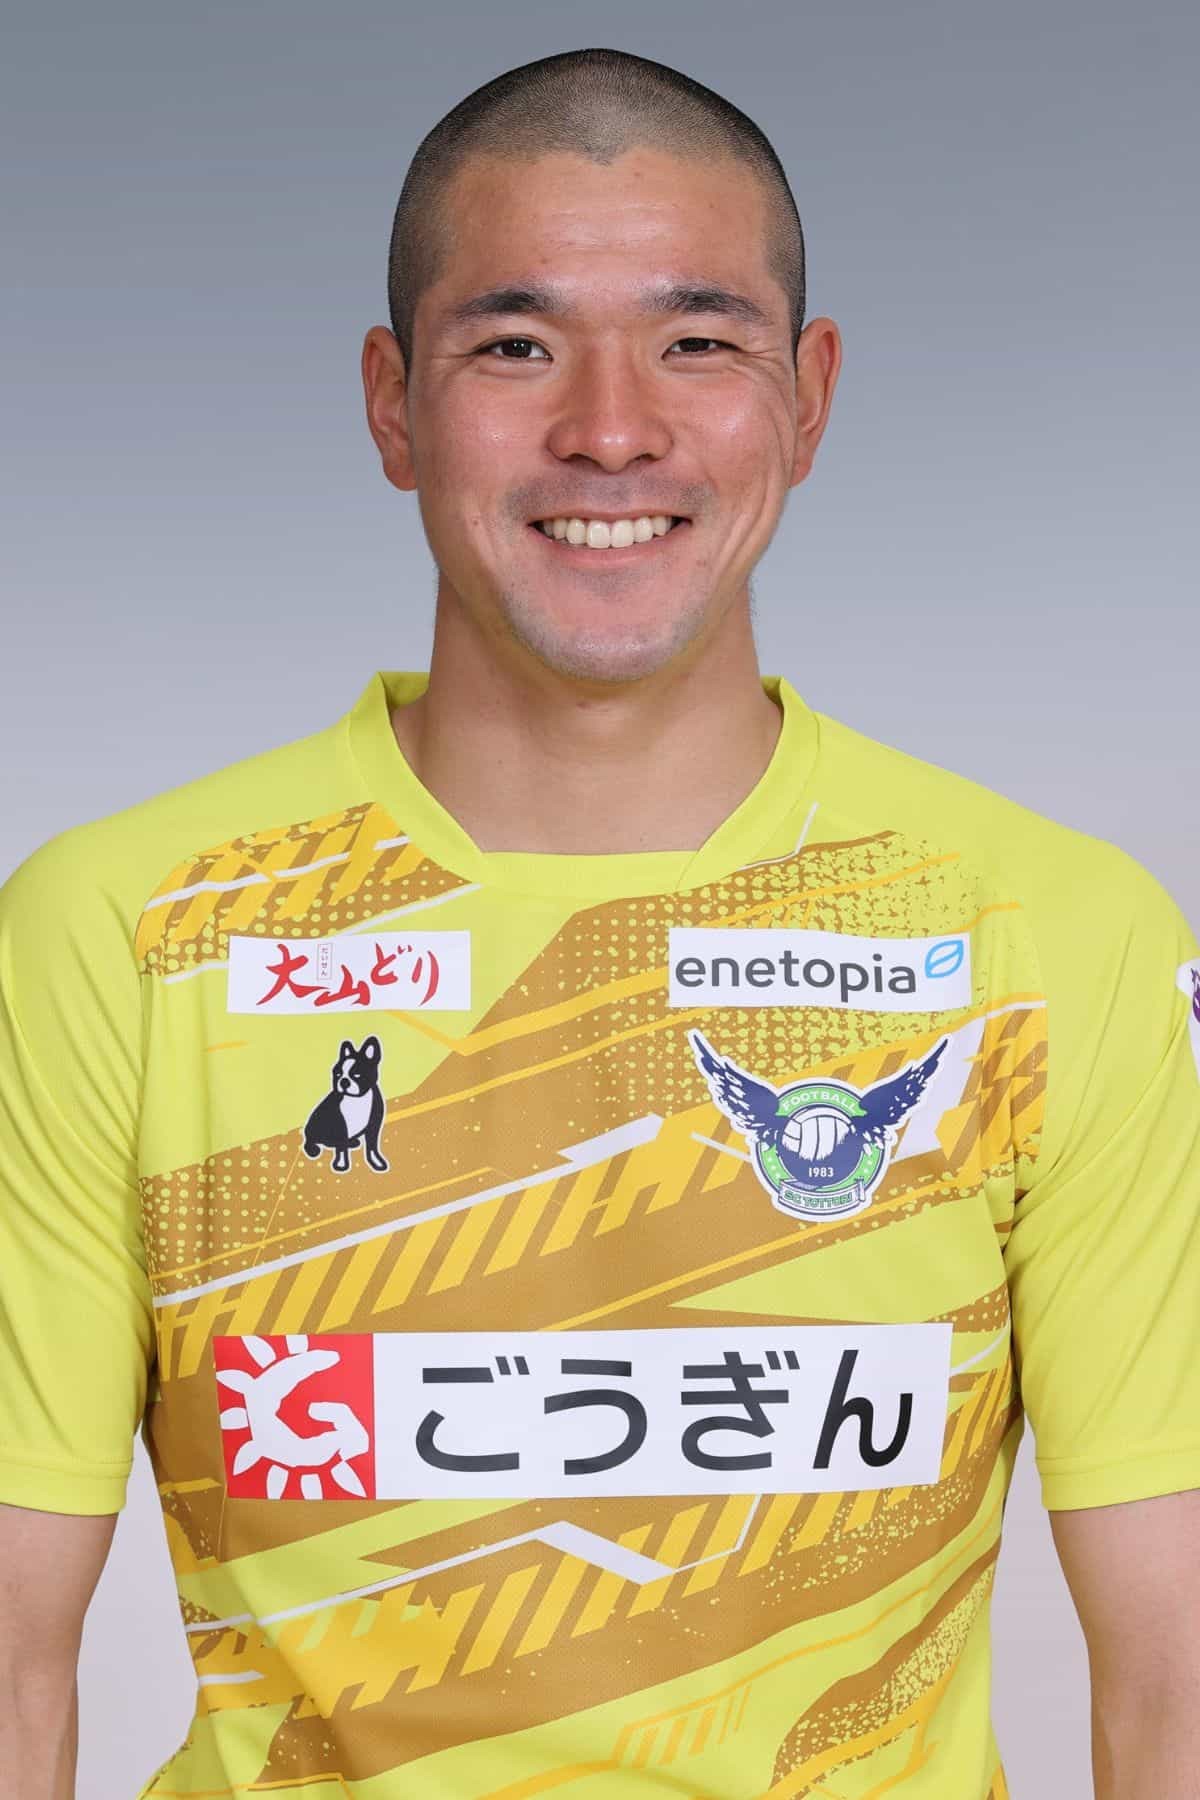 鳥取県のプロサッカークラブ「ガイナーレ鳥取」の高麗選手